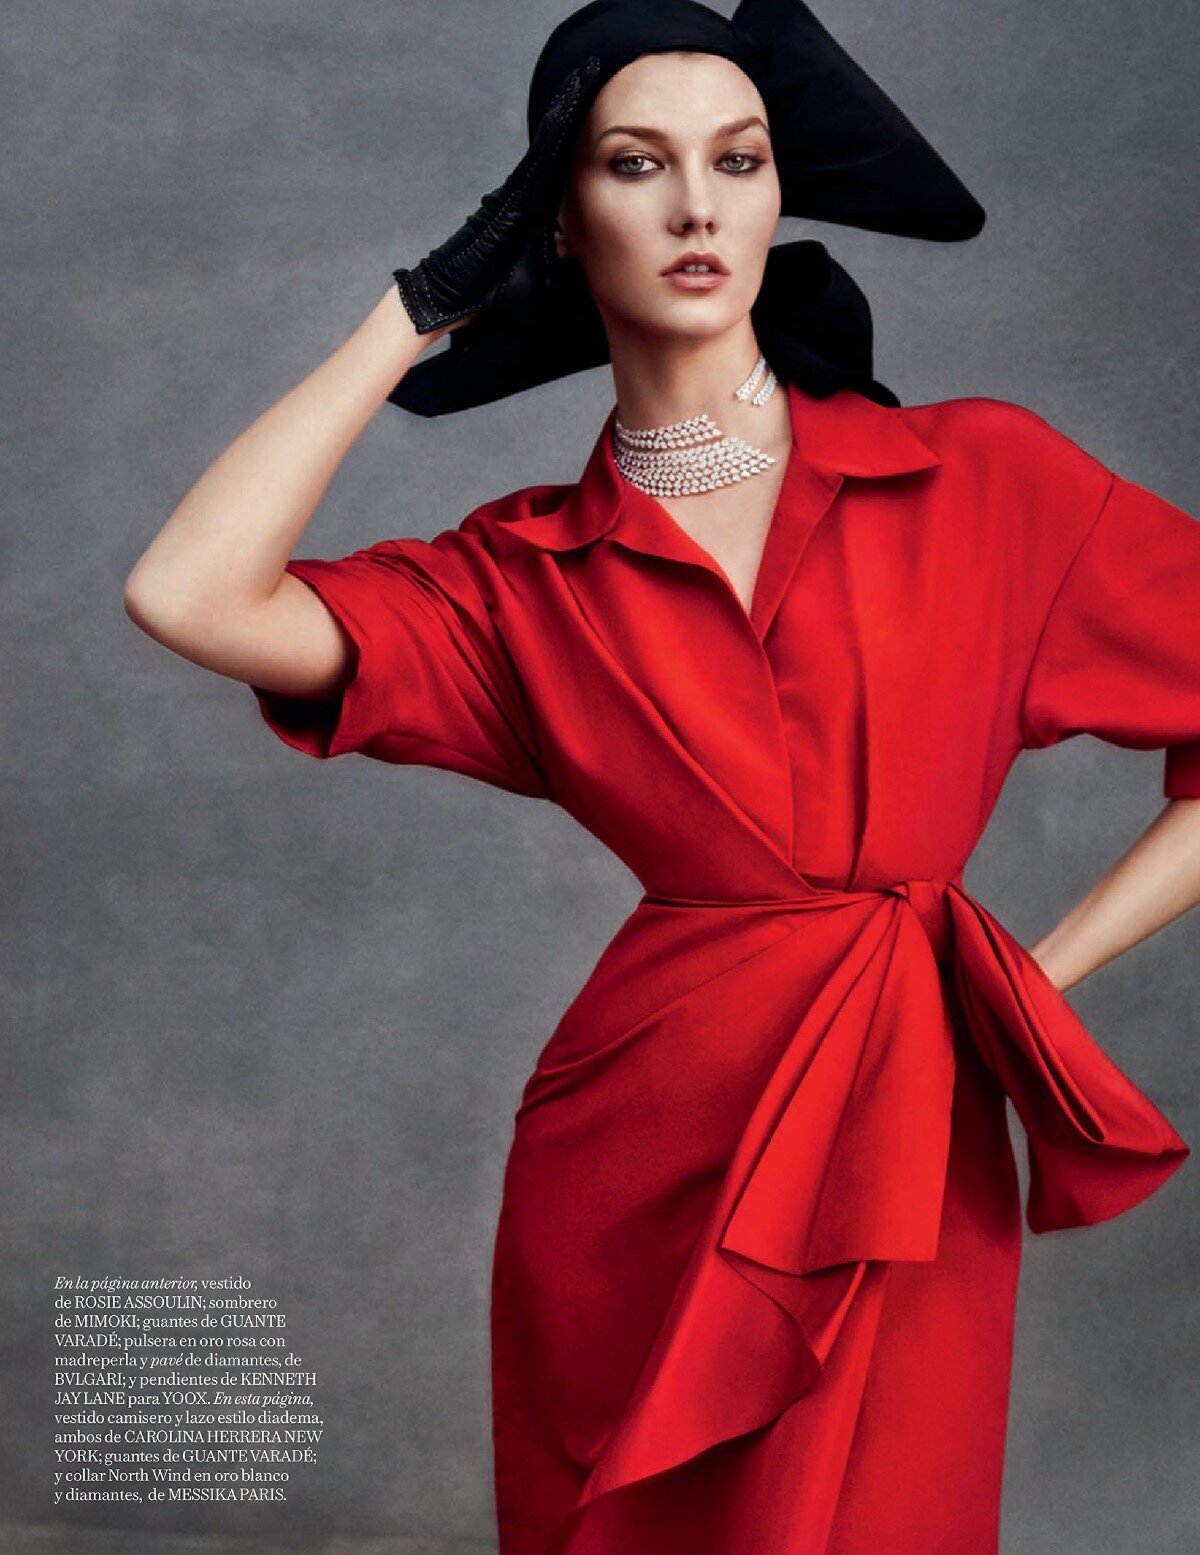 Karlie kloss by Txema Yeste for Vogue Spain December 2019 (3).jpg